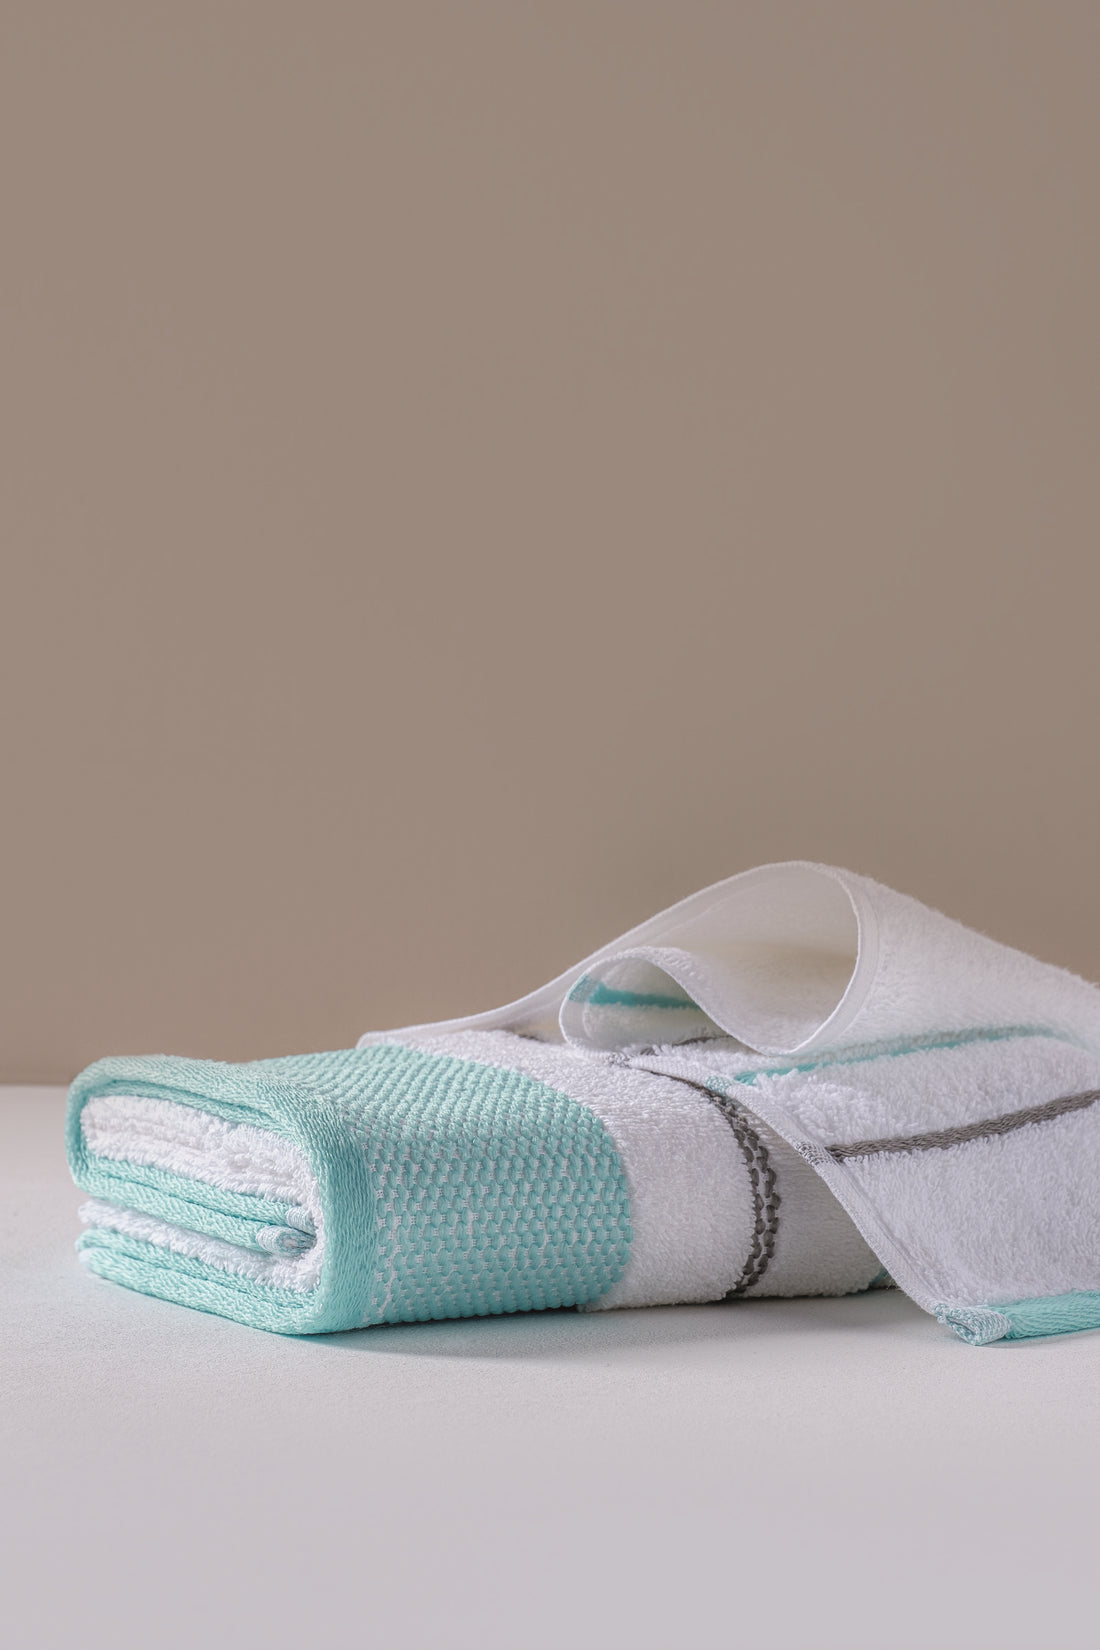 Cotton Box Set of 2 Dobby Towels Shiny Turquoise 50x90